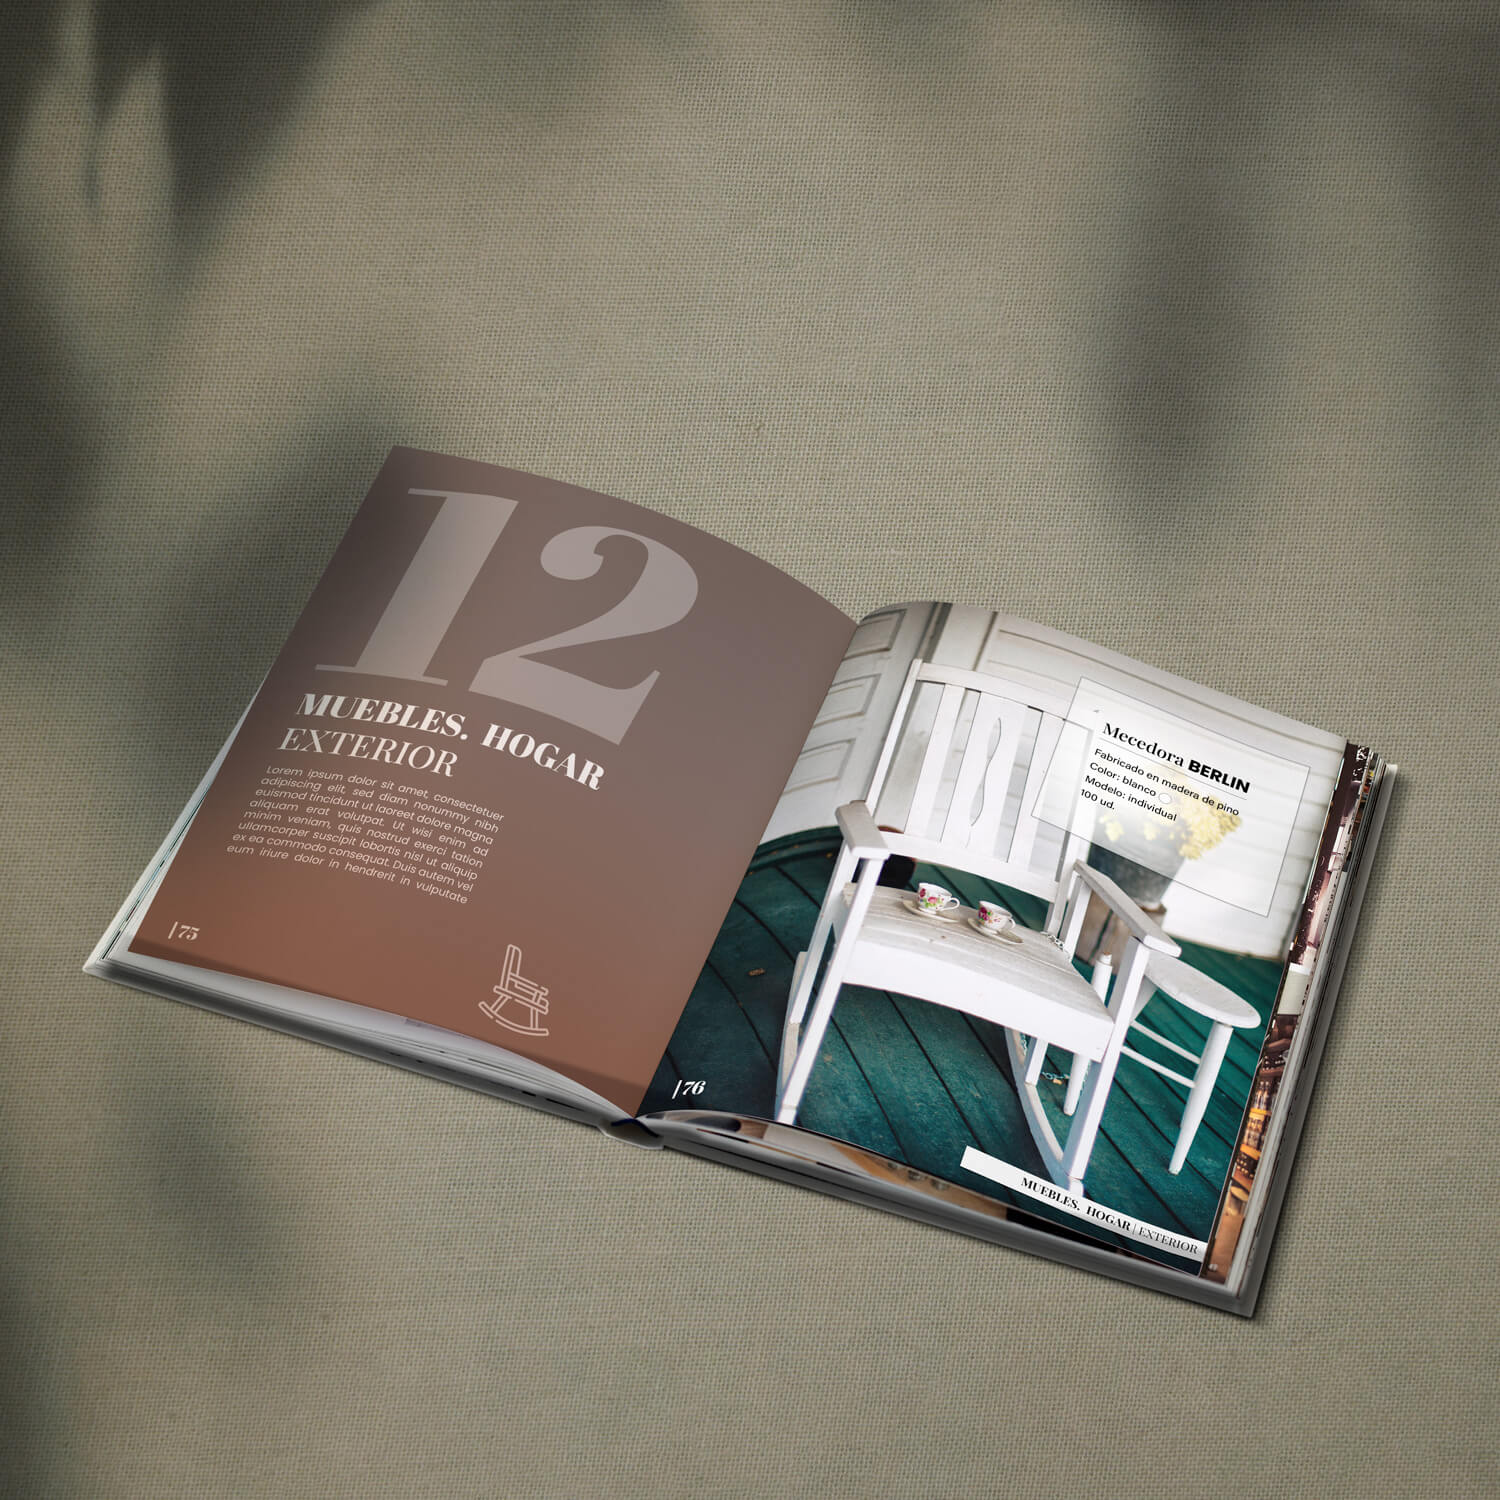 Imagen de un catálogo de muebles, abierto por la página de muebles de exterior y con el producto de la mecedora berlin en blanco.